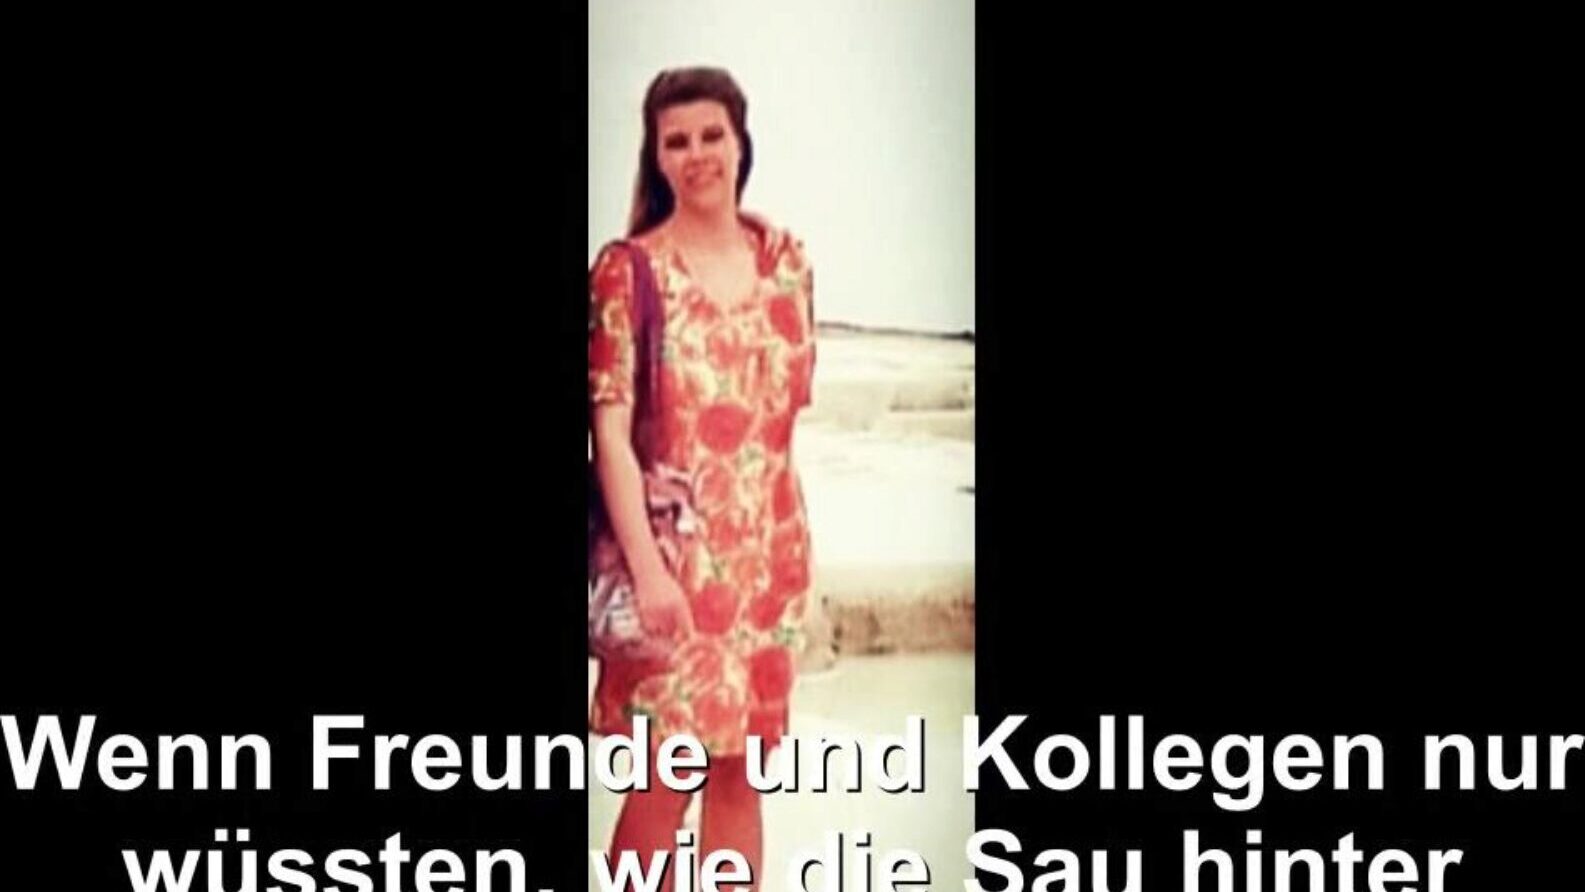 odsłonięta niemiecka gospodyni domowa, bezpłatna rura niemieckie porno HD bd oglądaj niemiecka gospodyni domowa odsłonięta scena filmowa na xhamster, największej stronie z seksem HD z mnóstwem darmowych kanałów niemiecka żona i domowe sceny z filmów